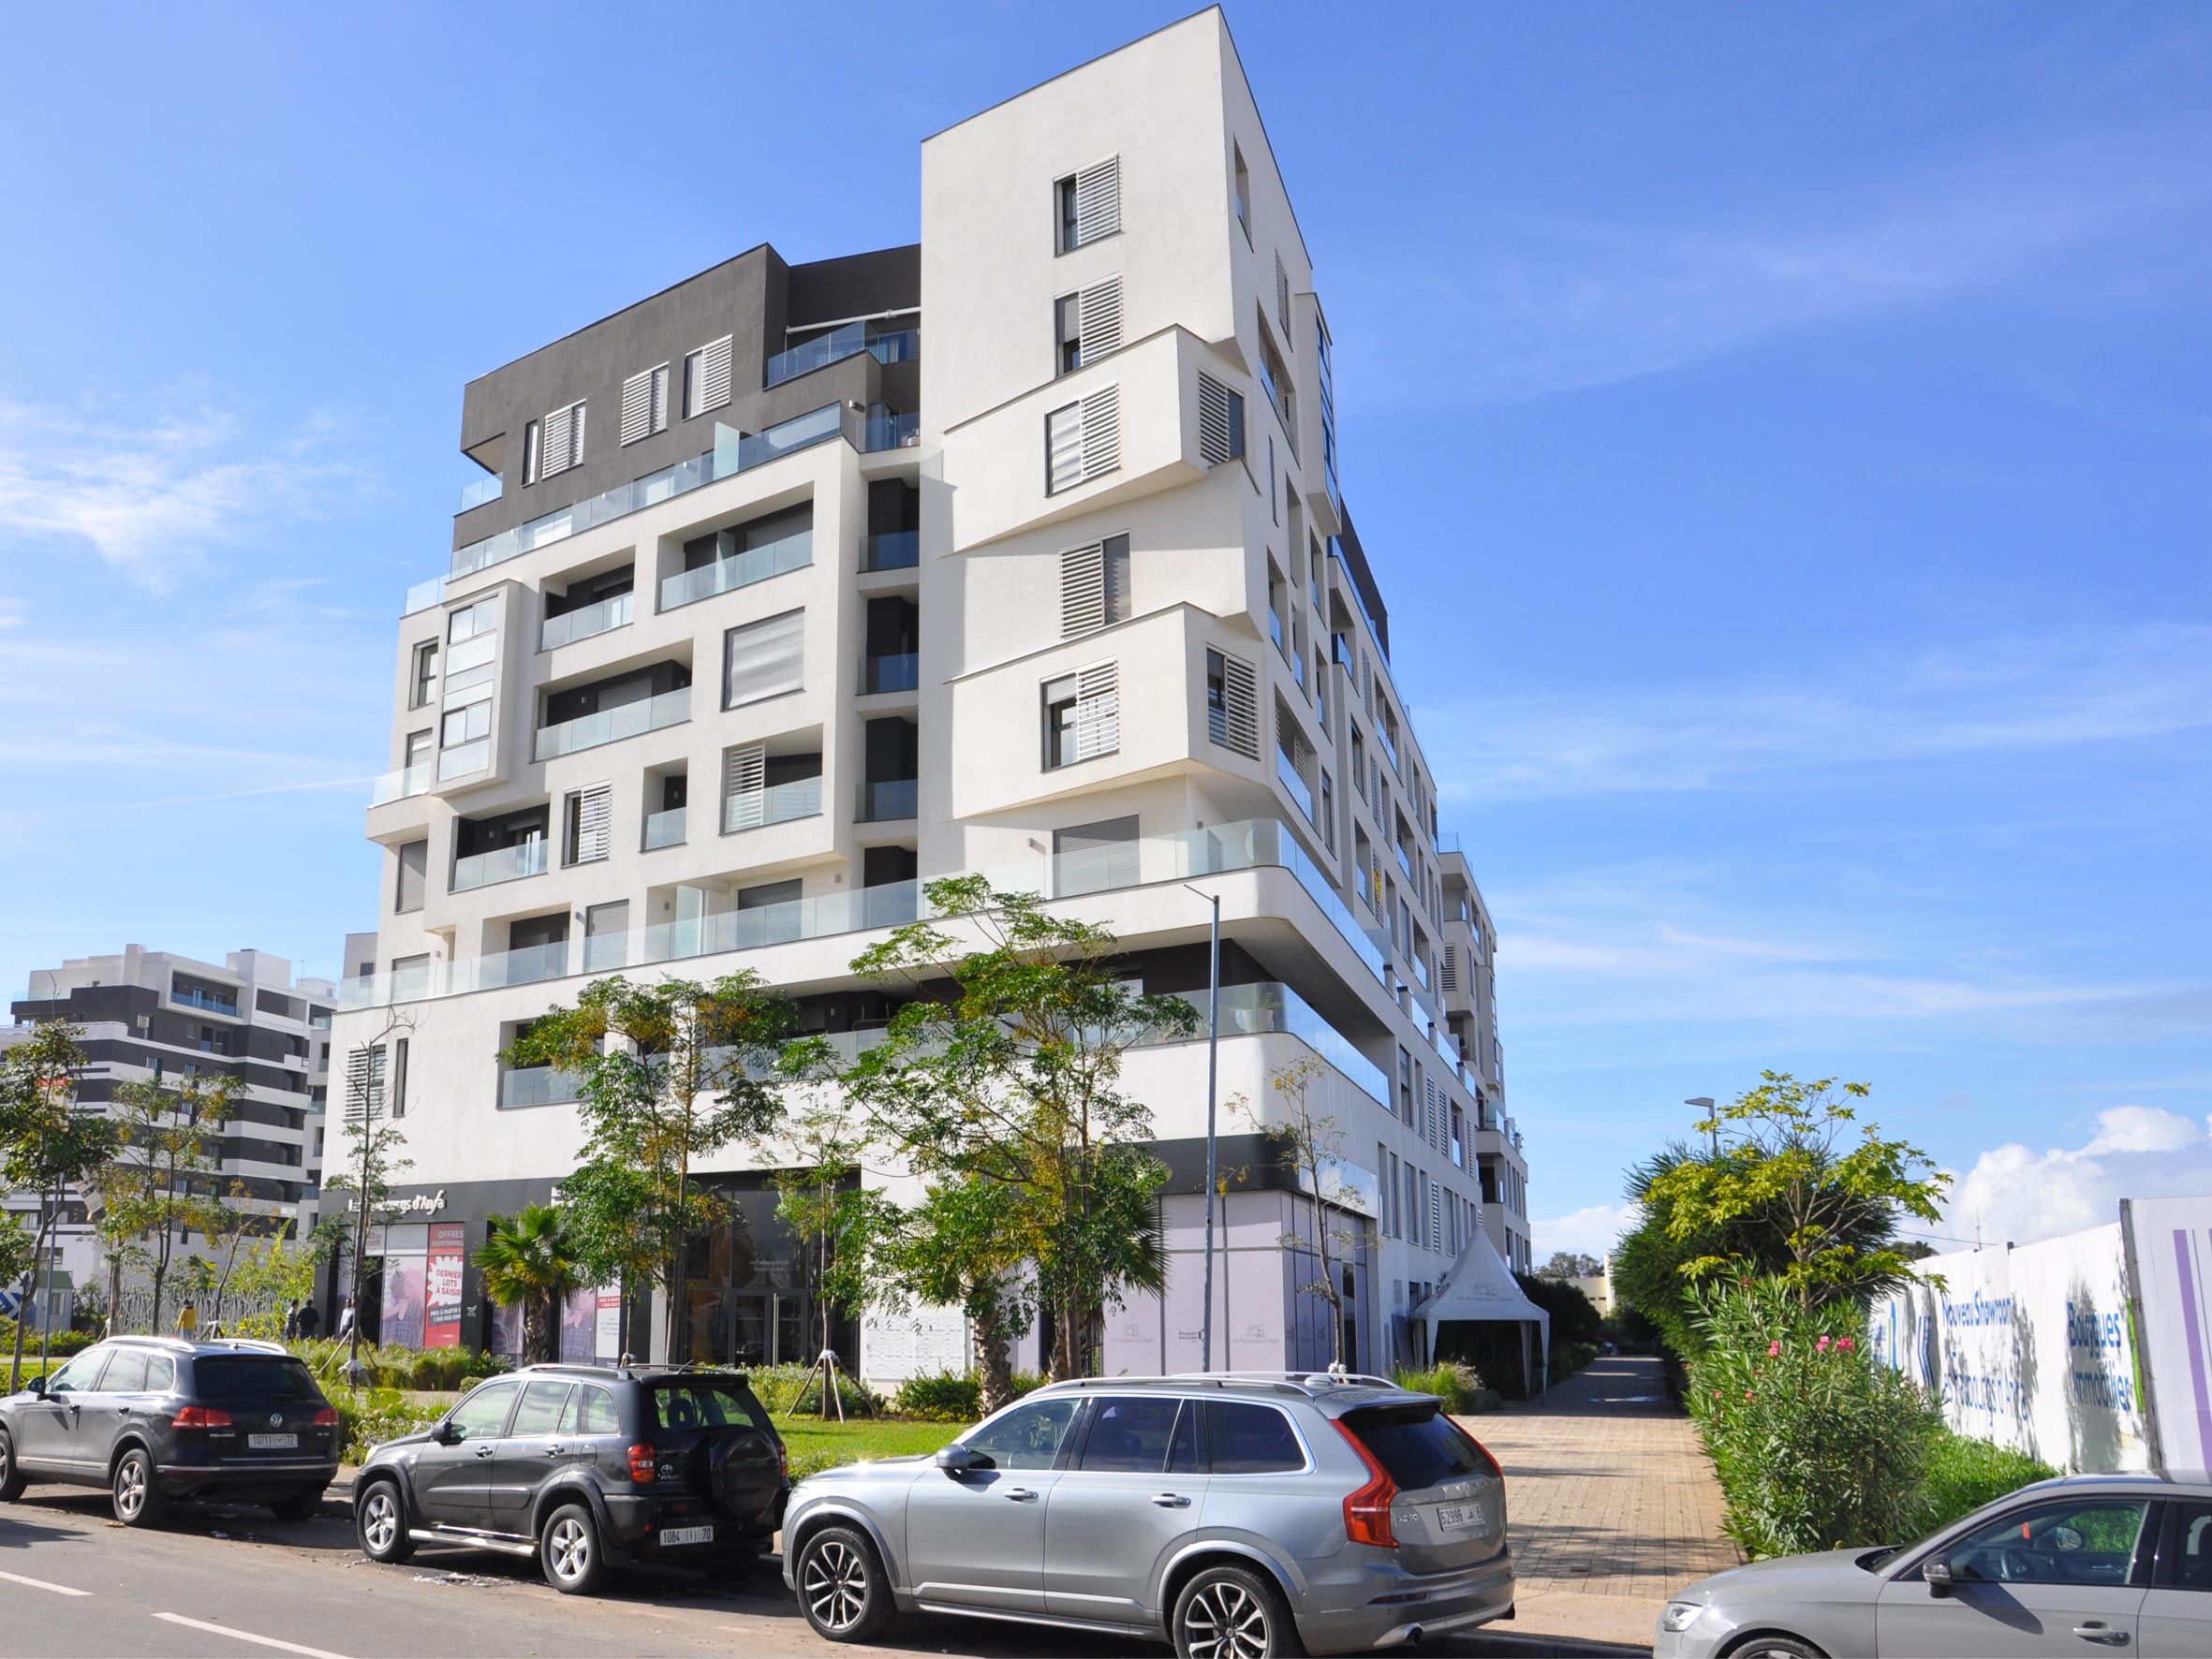 Bouygues Immobilier Maroc livre la première tranche du projet Les Faubourgs d'Anfa situé dans le quartier Anfa Cité de l'Air